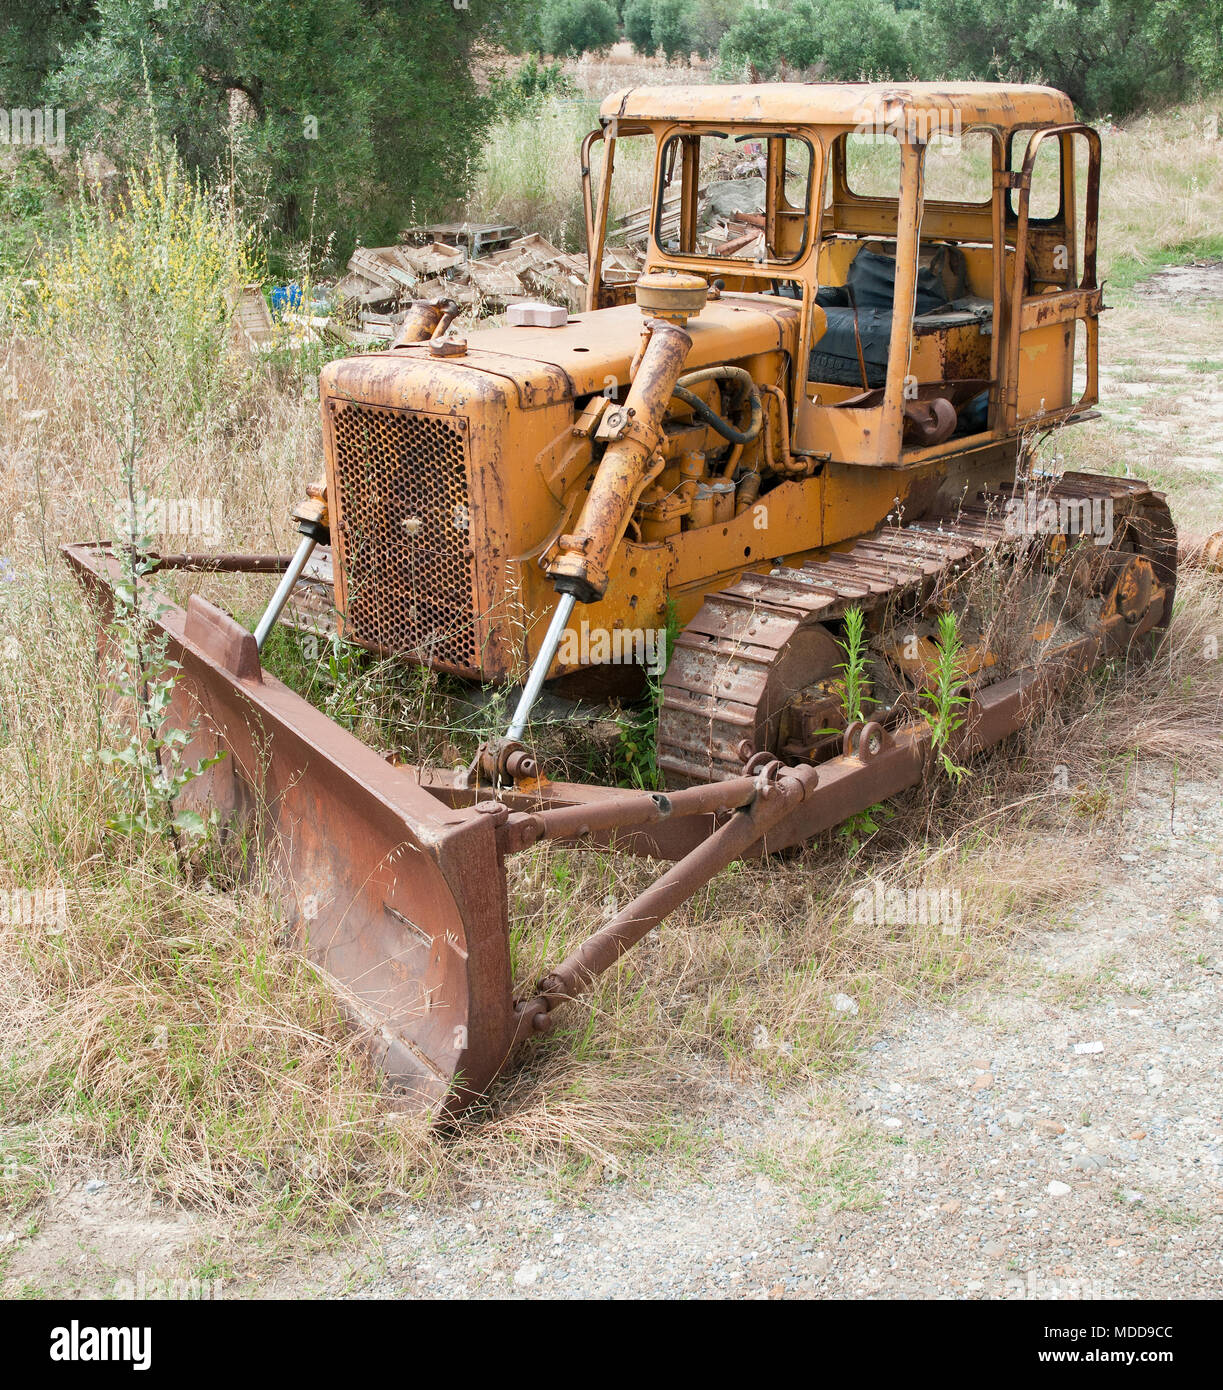 Bulldozer abandonados oxidados a podrirse en un campo Foto de stock